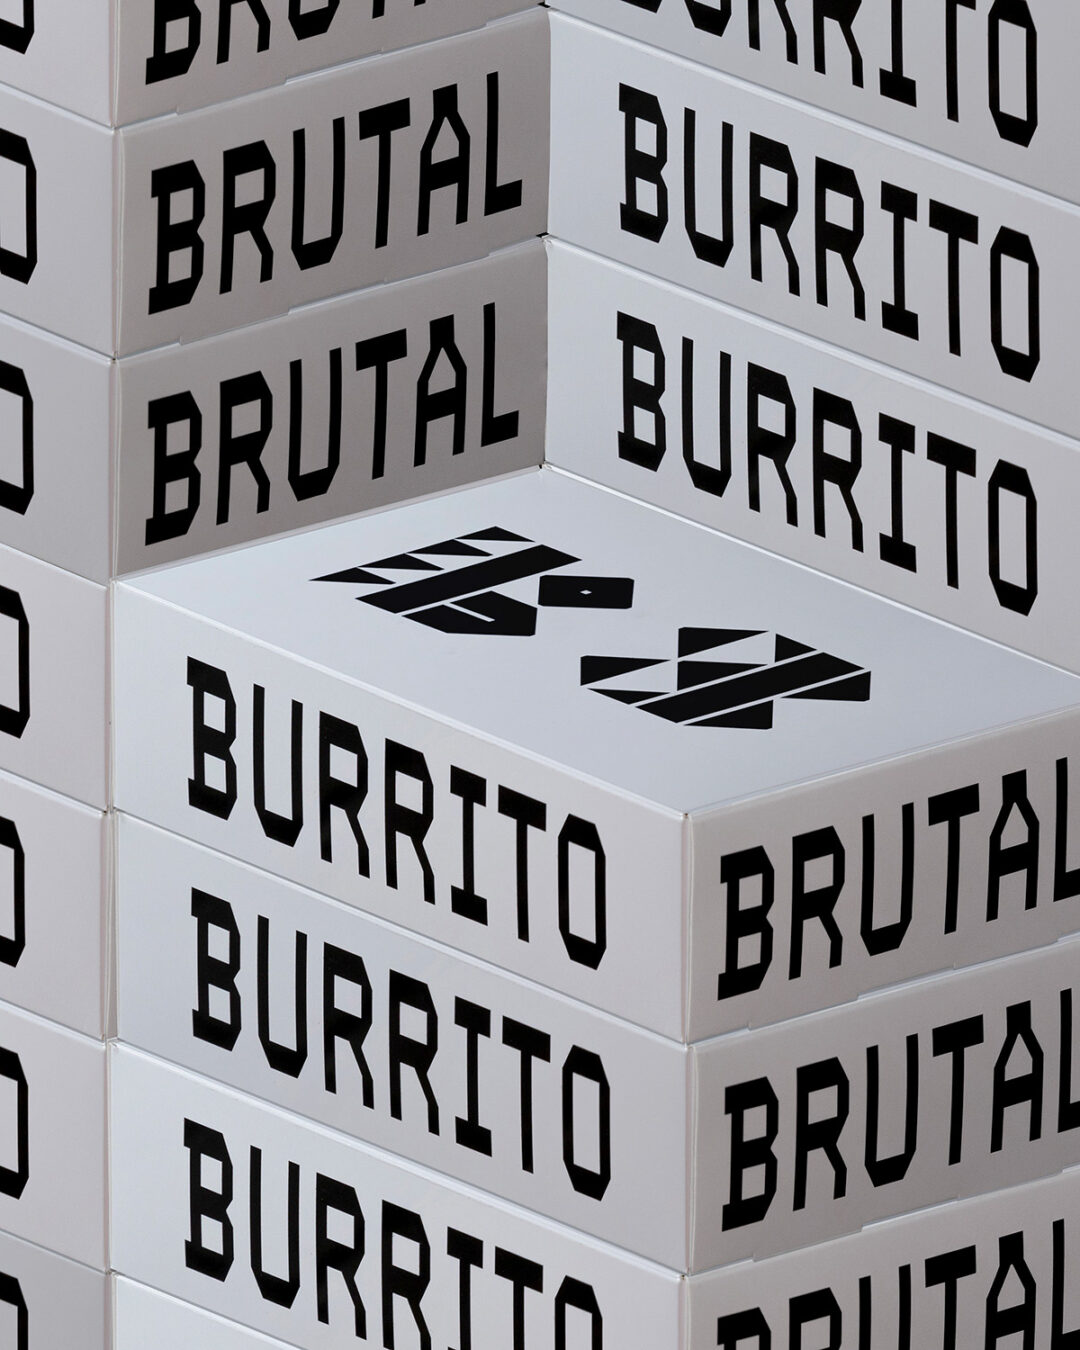 Tres Tipos Gráficos Brutal BurritoTres Tipos Gráficos Brutal Burrito